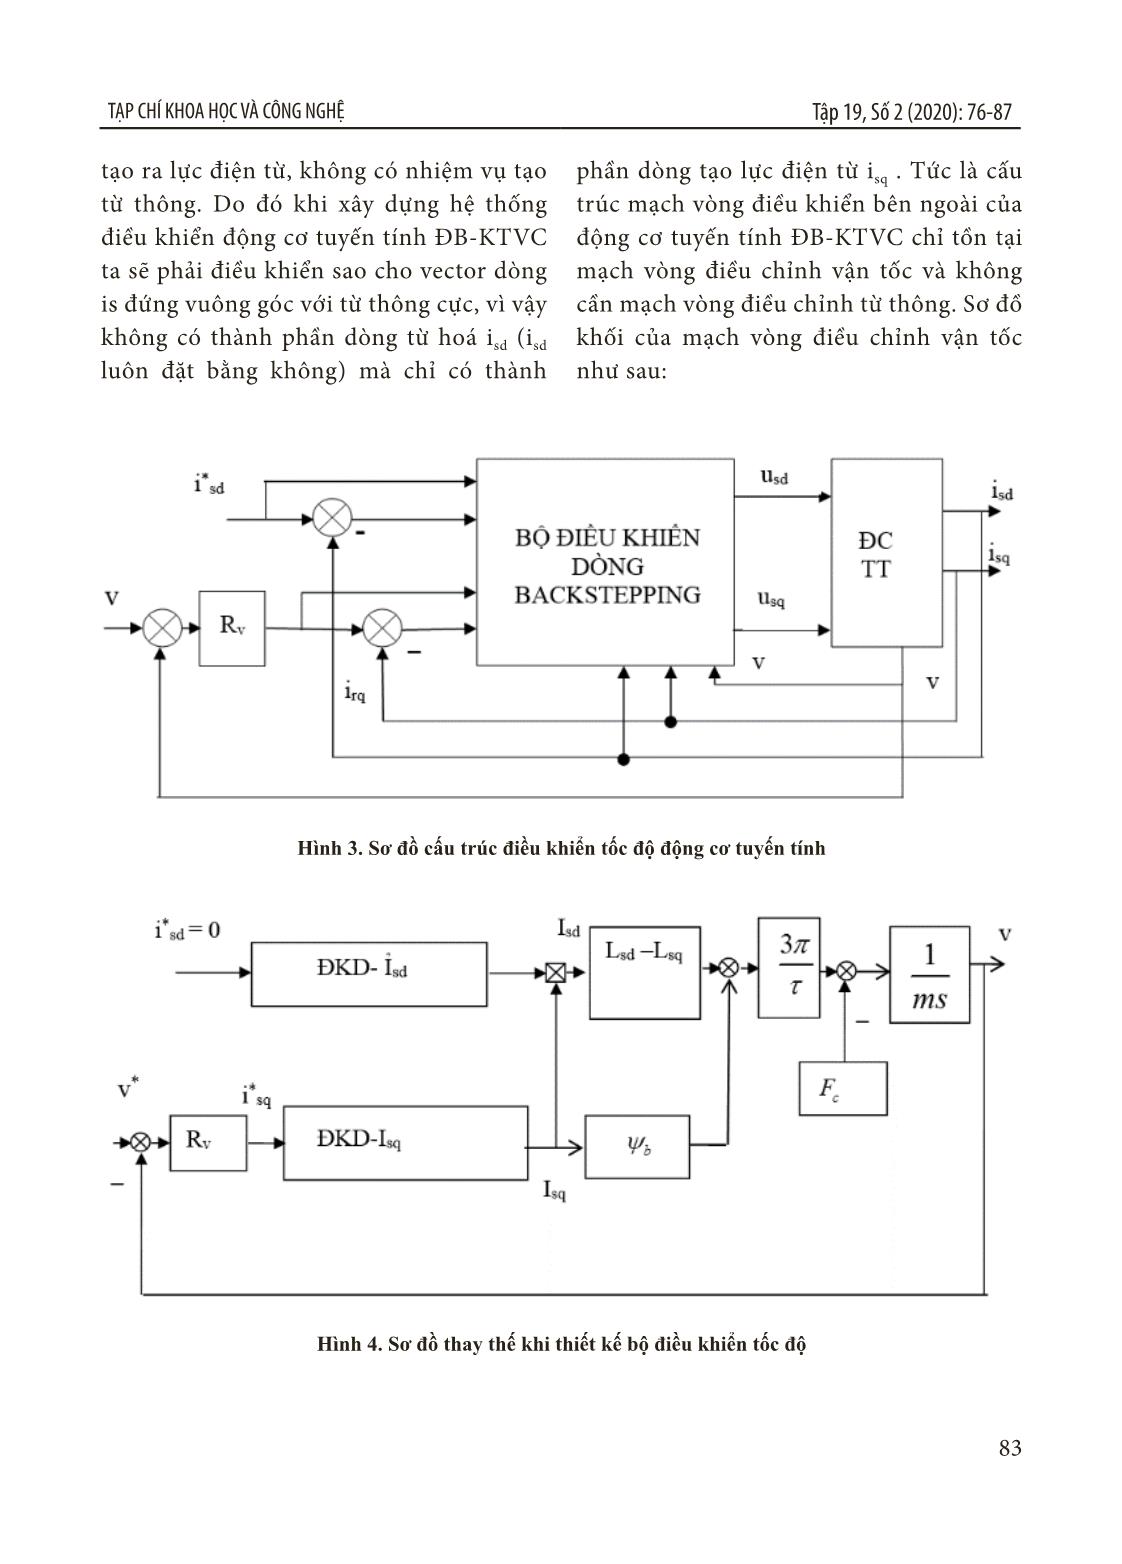 Thiết kế bộ điều khiển cho động cơ tuyến tính đồng bộ kích thích vĩnh cửu ứng dụng phương pháp backstepping trang 8